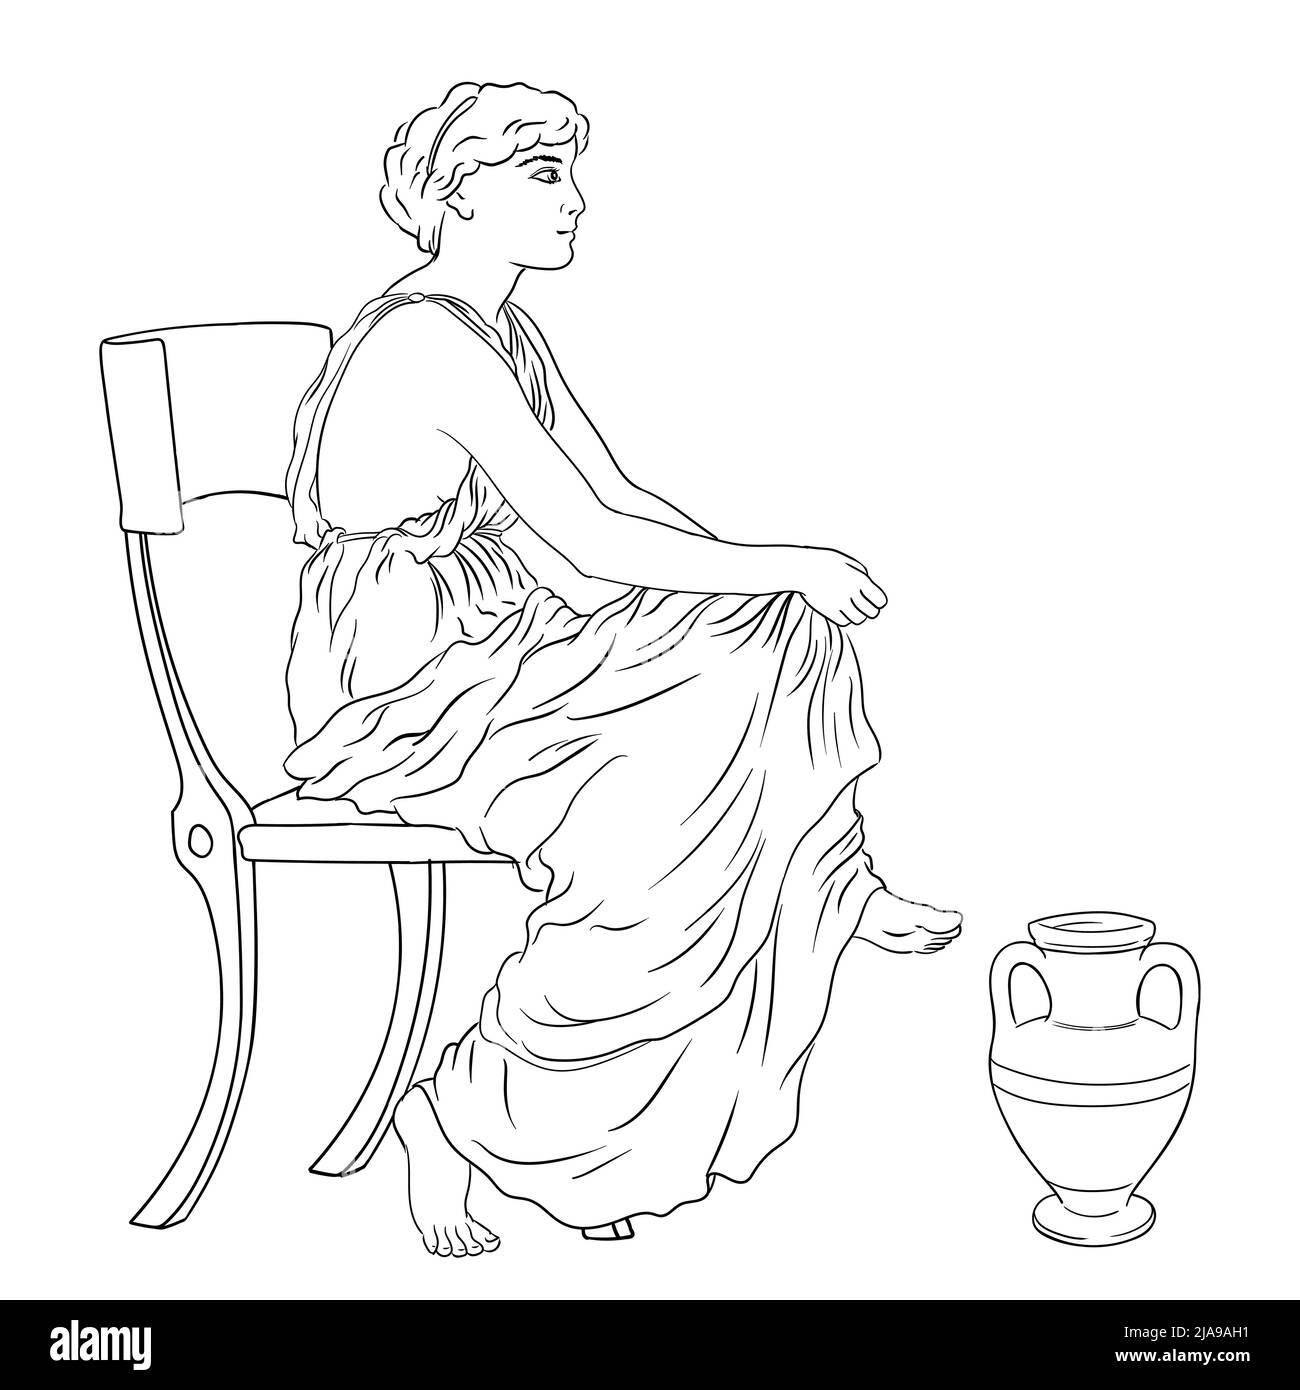 Die antike Griechin sitzt auf einem Stuhl in der Nähe eines Kännchens Wein. Abbildung isoliert auf weißem Hintergrund. Stock Vektor